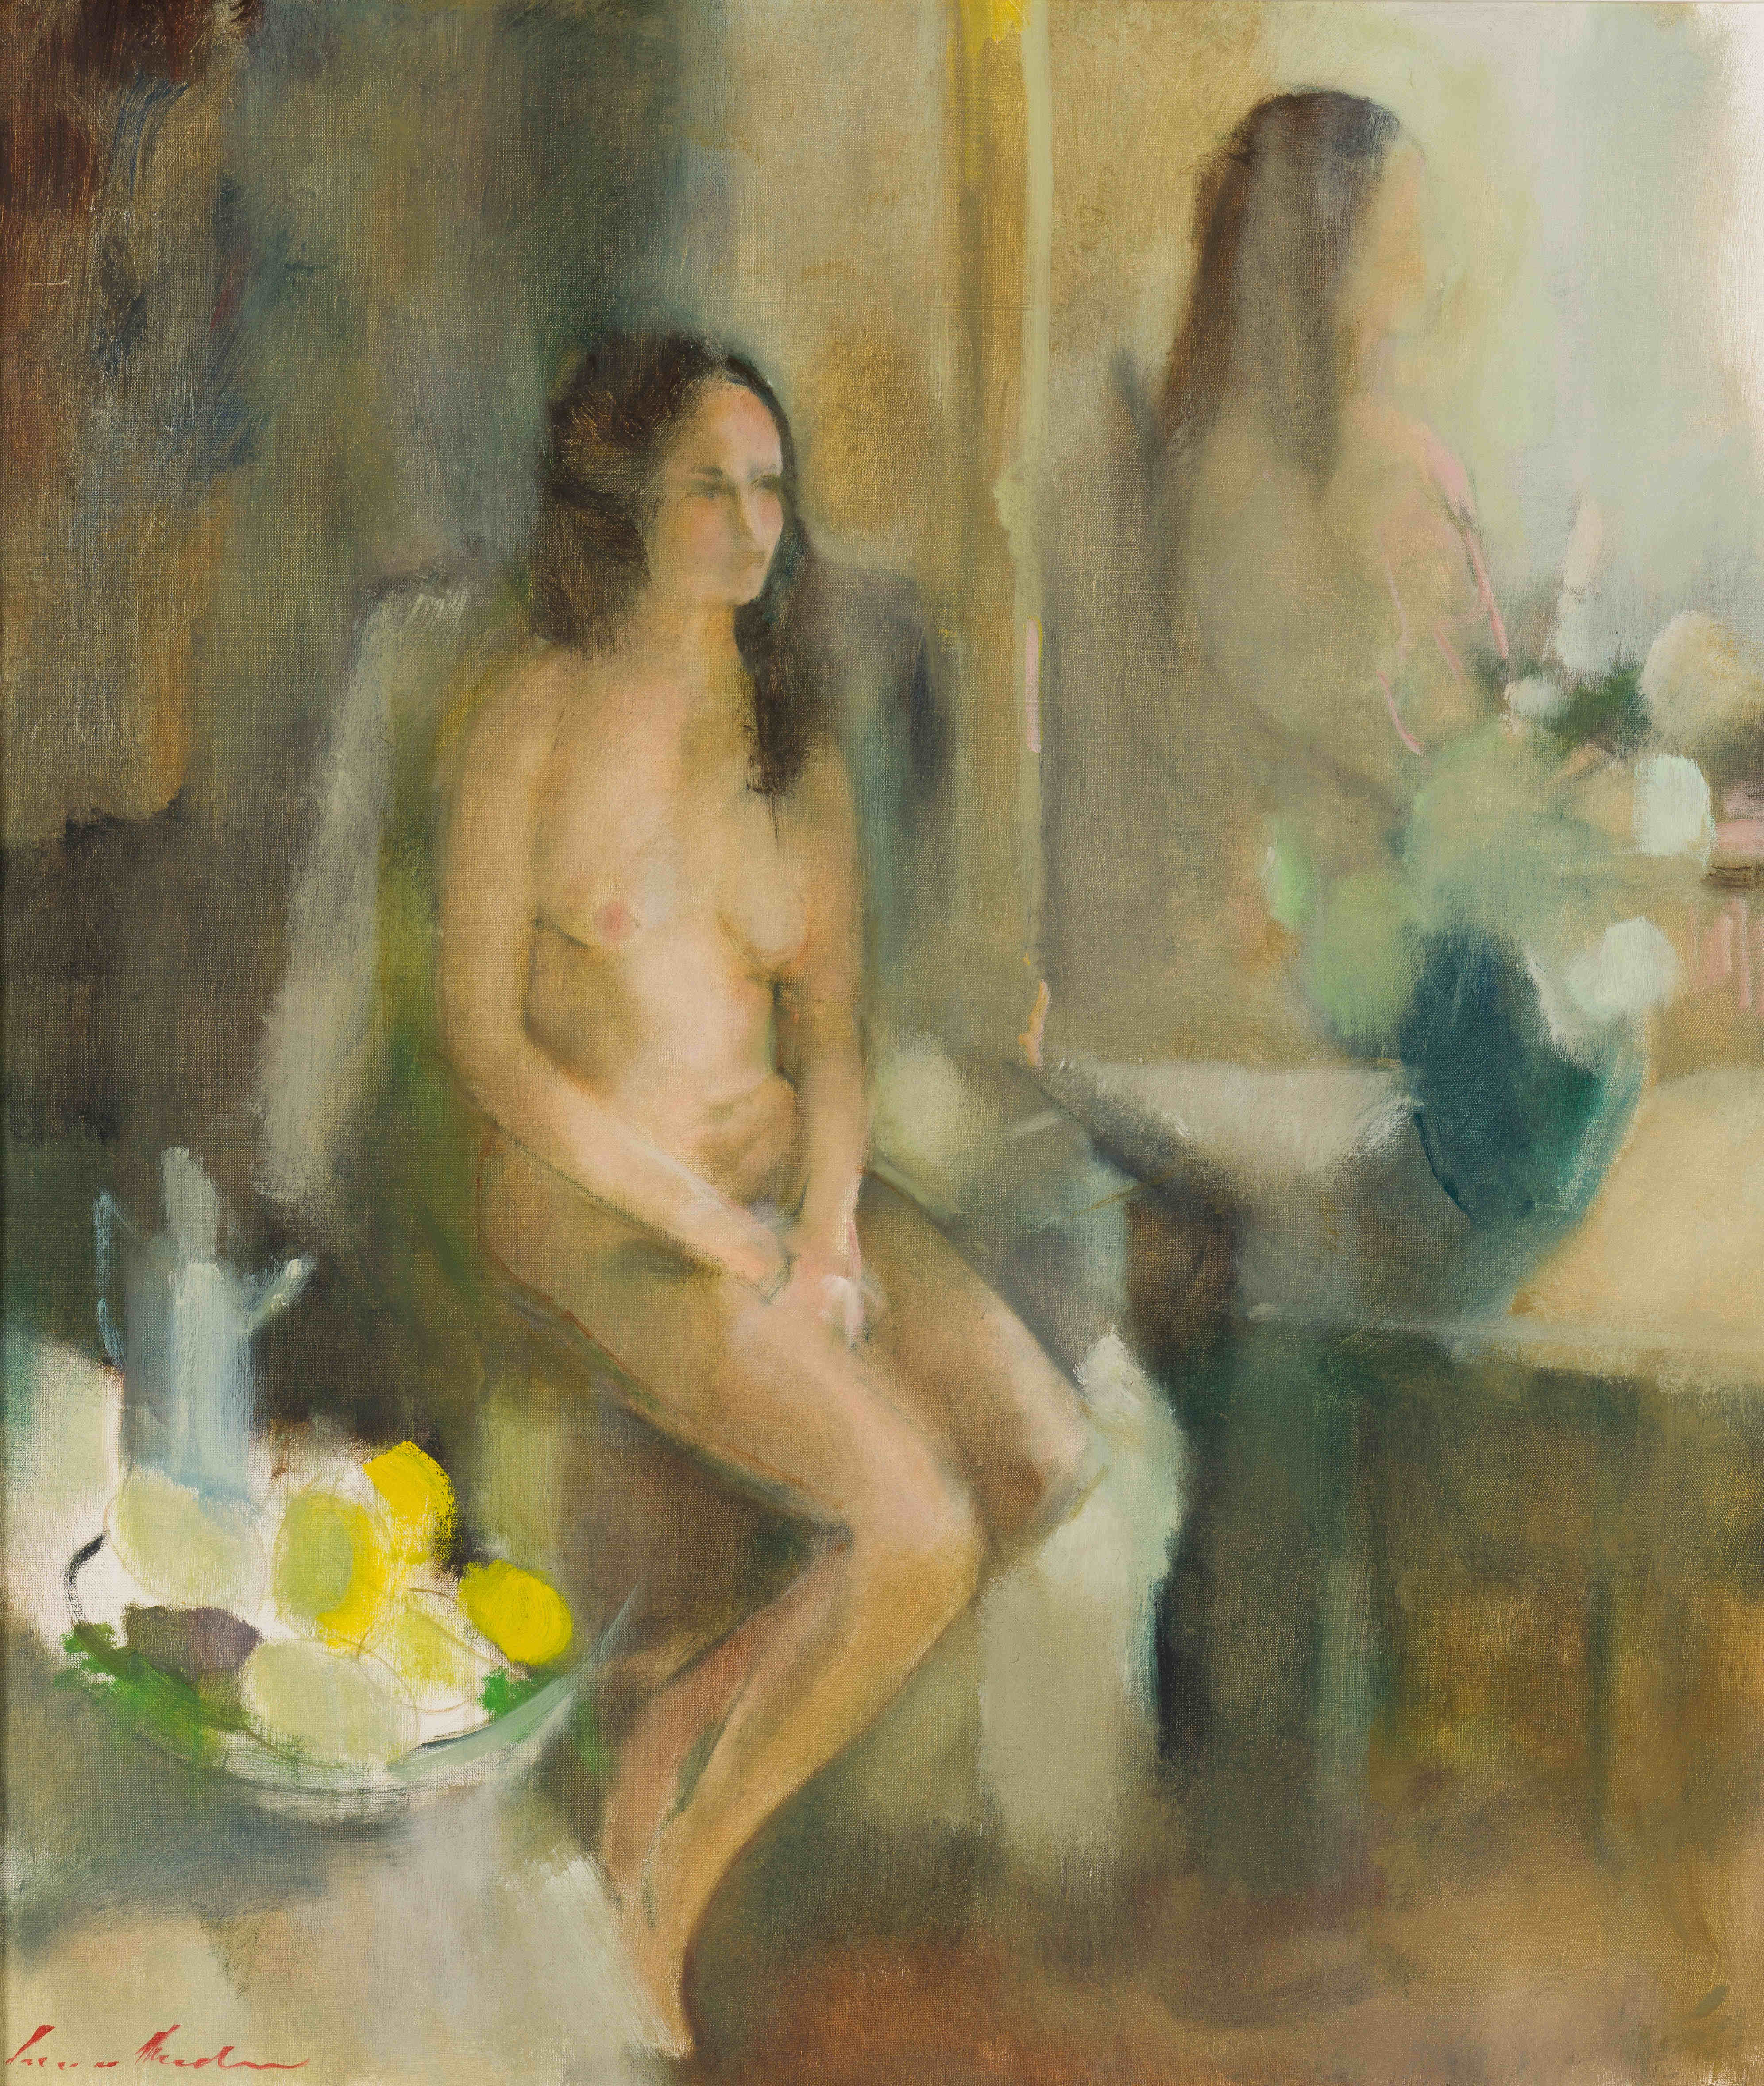 Louis van Heerden; Seated Nude